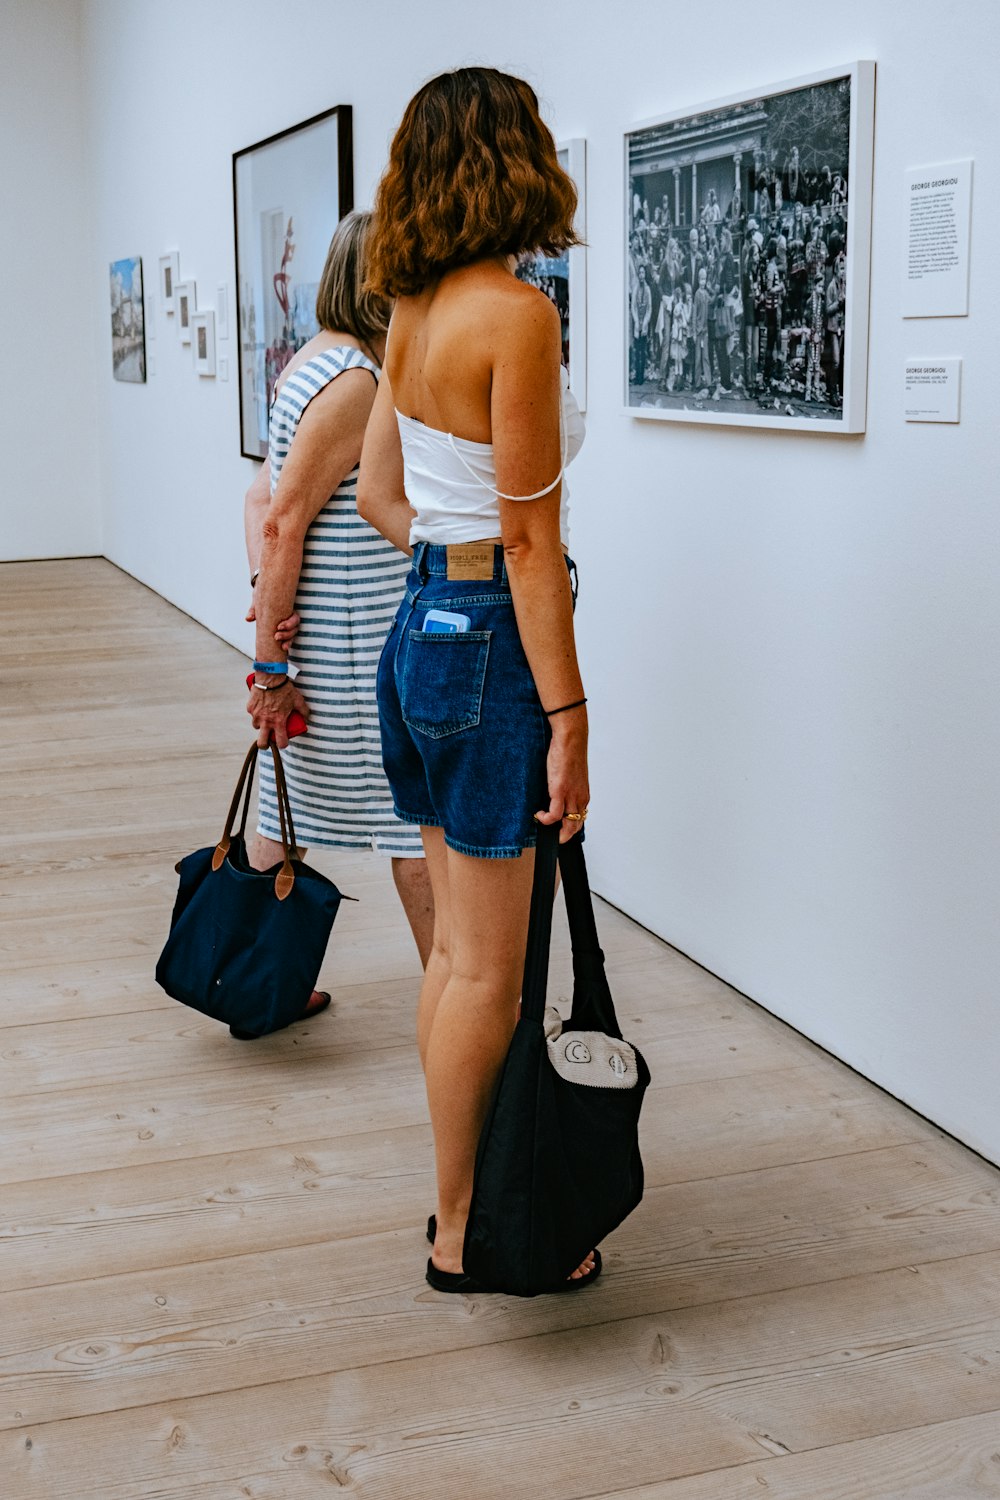 Una donna in canottiera bianca e pantaloncini di jeans che guarda le immagini su un muro